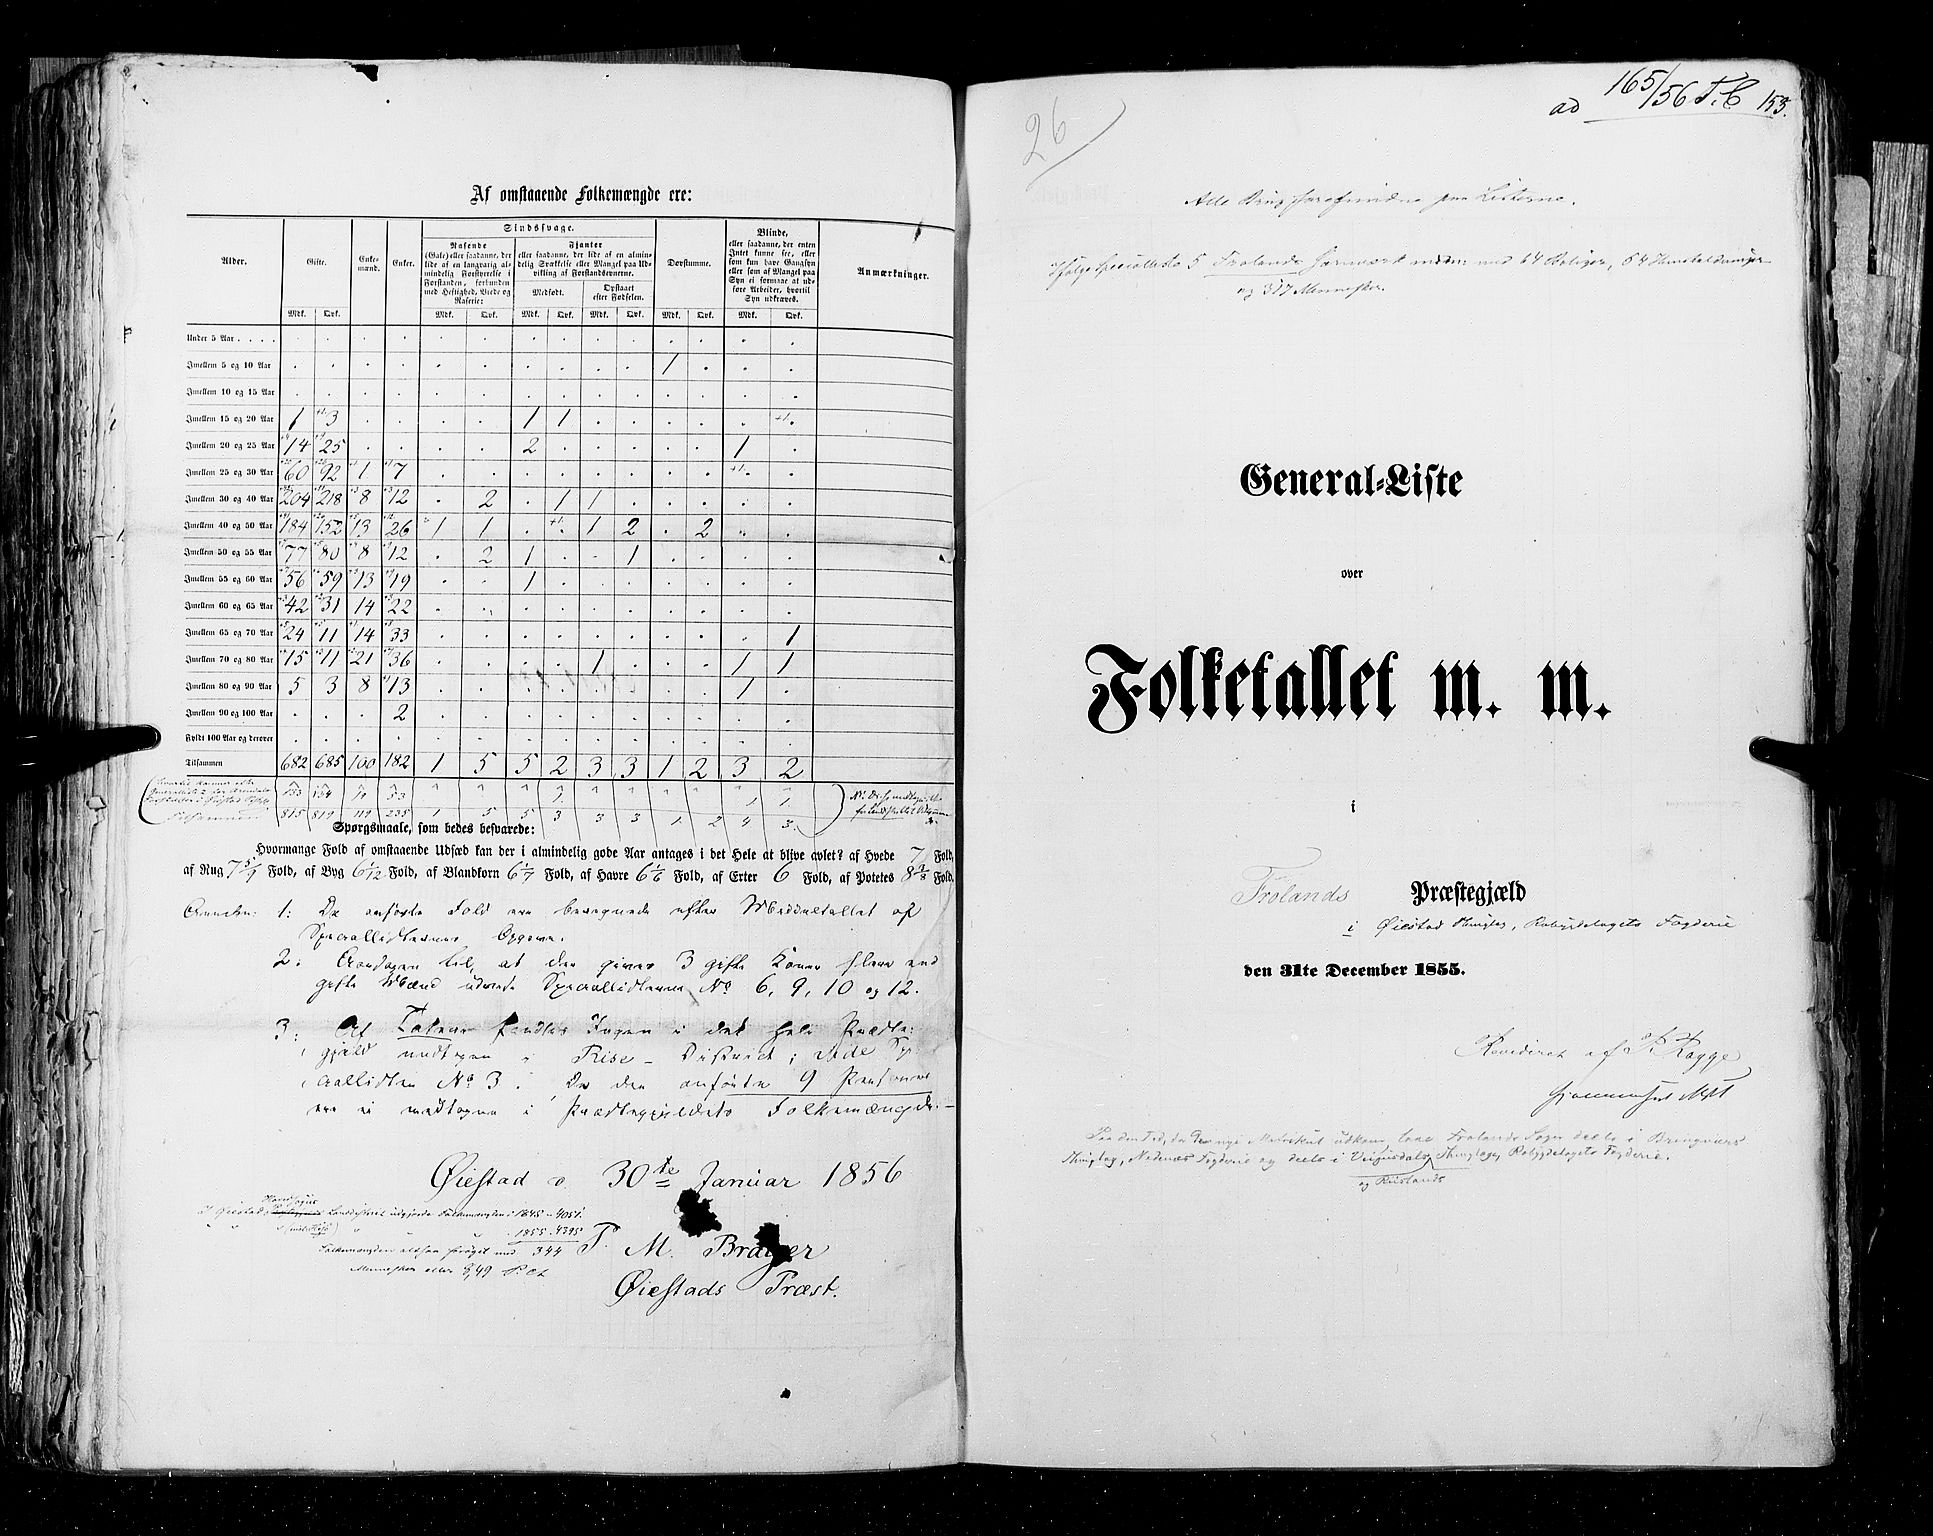 RA, Folketellingen 1855, bind 3: Bratsberg amt, Nedenes amt og Lister og Mandal amt, 1855, s. 153